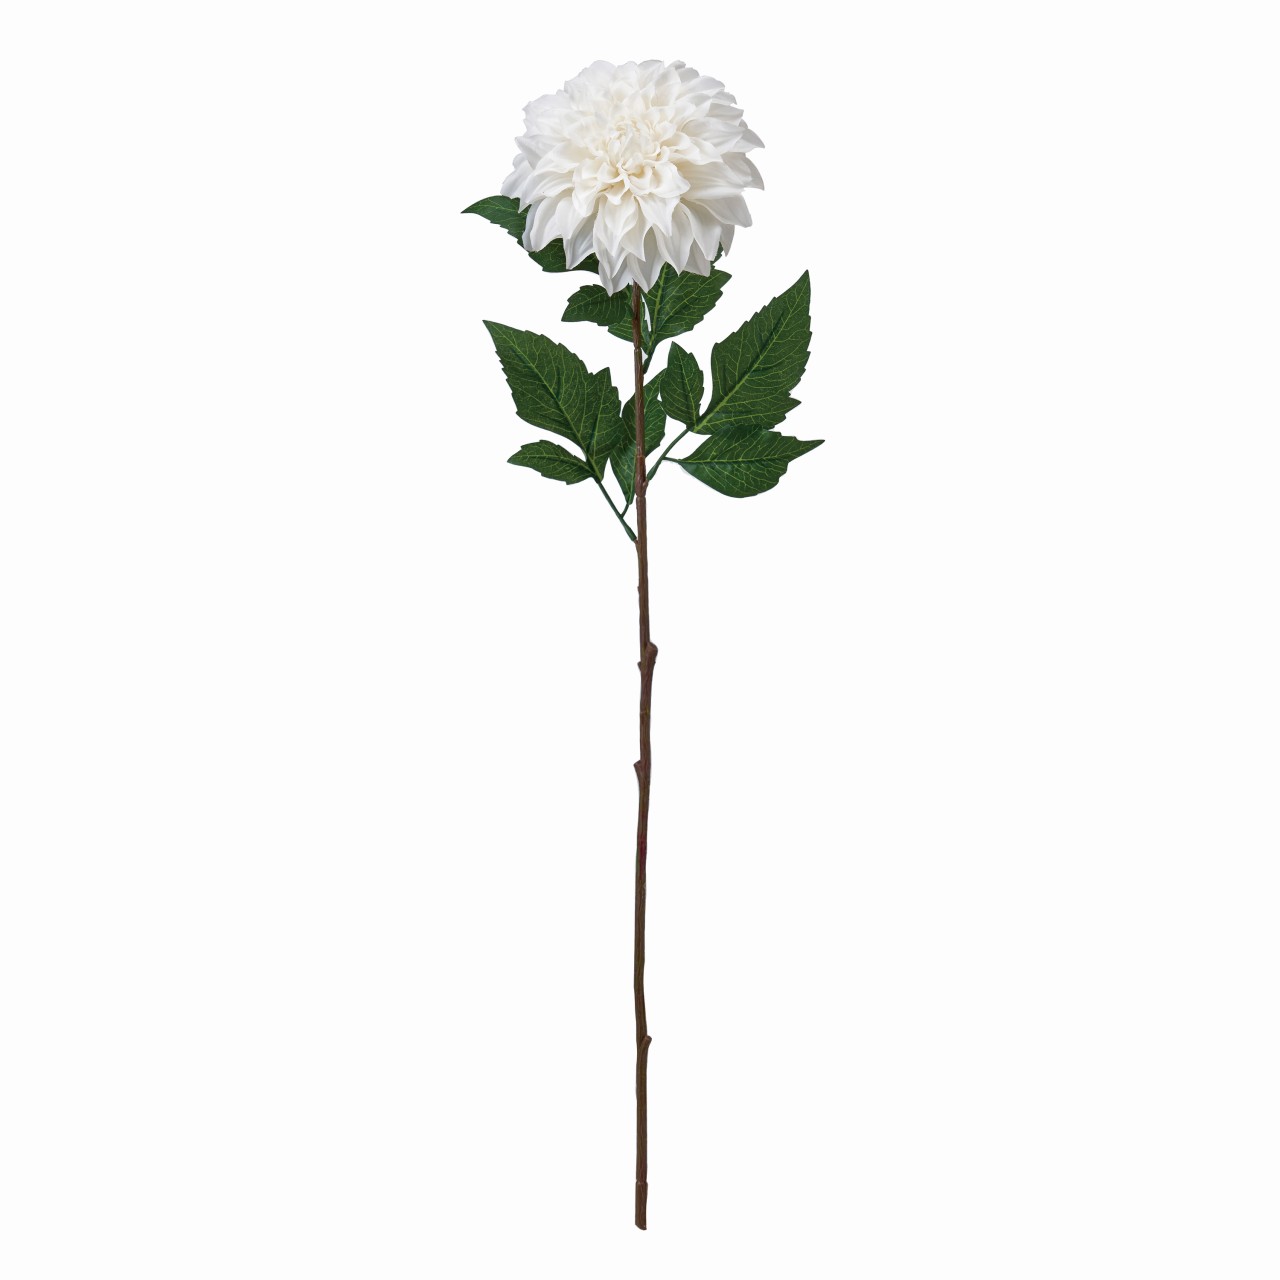 マイフラ 通販 Magiq アランダリア ホワイト アーティフィシャルフラワー 造花 Fm 001 ダリア ホワイト Magiq アーティフィシャルフラワー 造花 全国にmagiq 花器 花資材などをお届けします